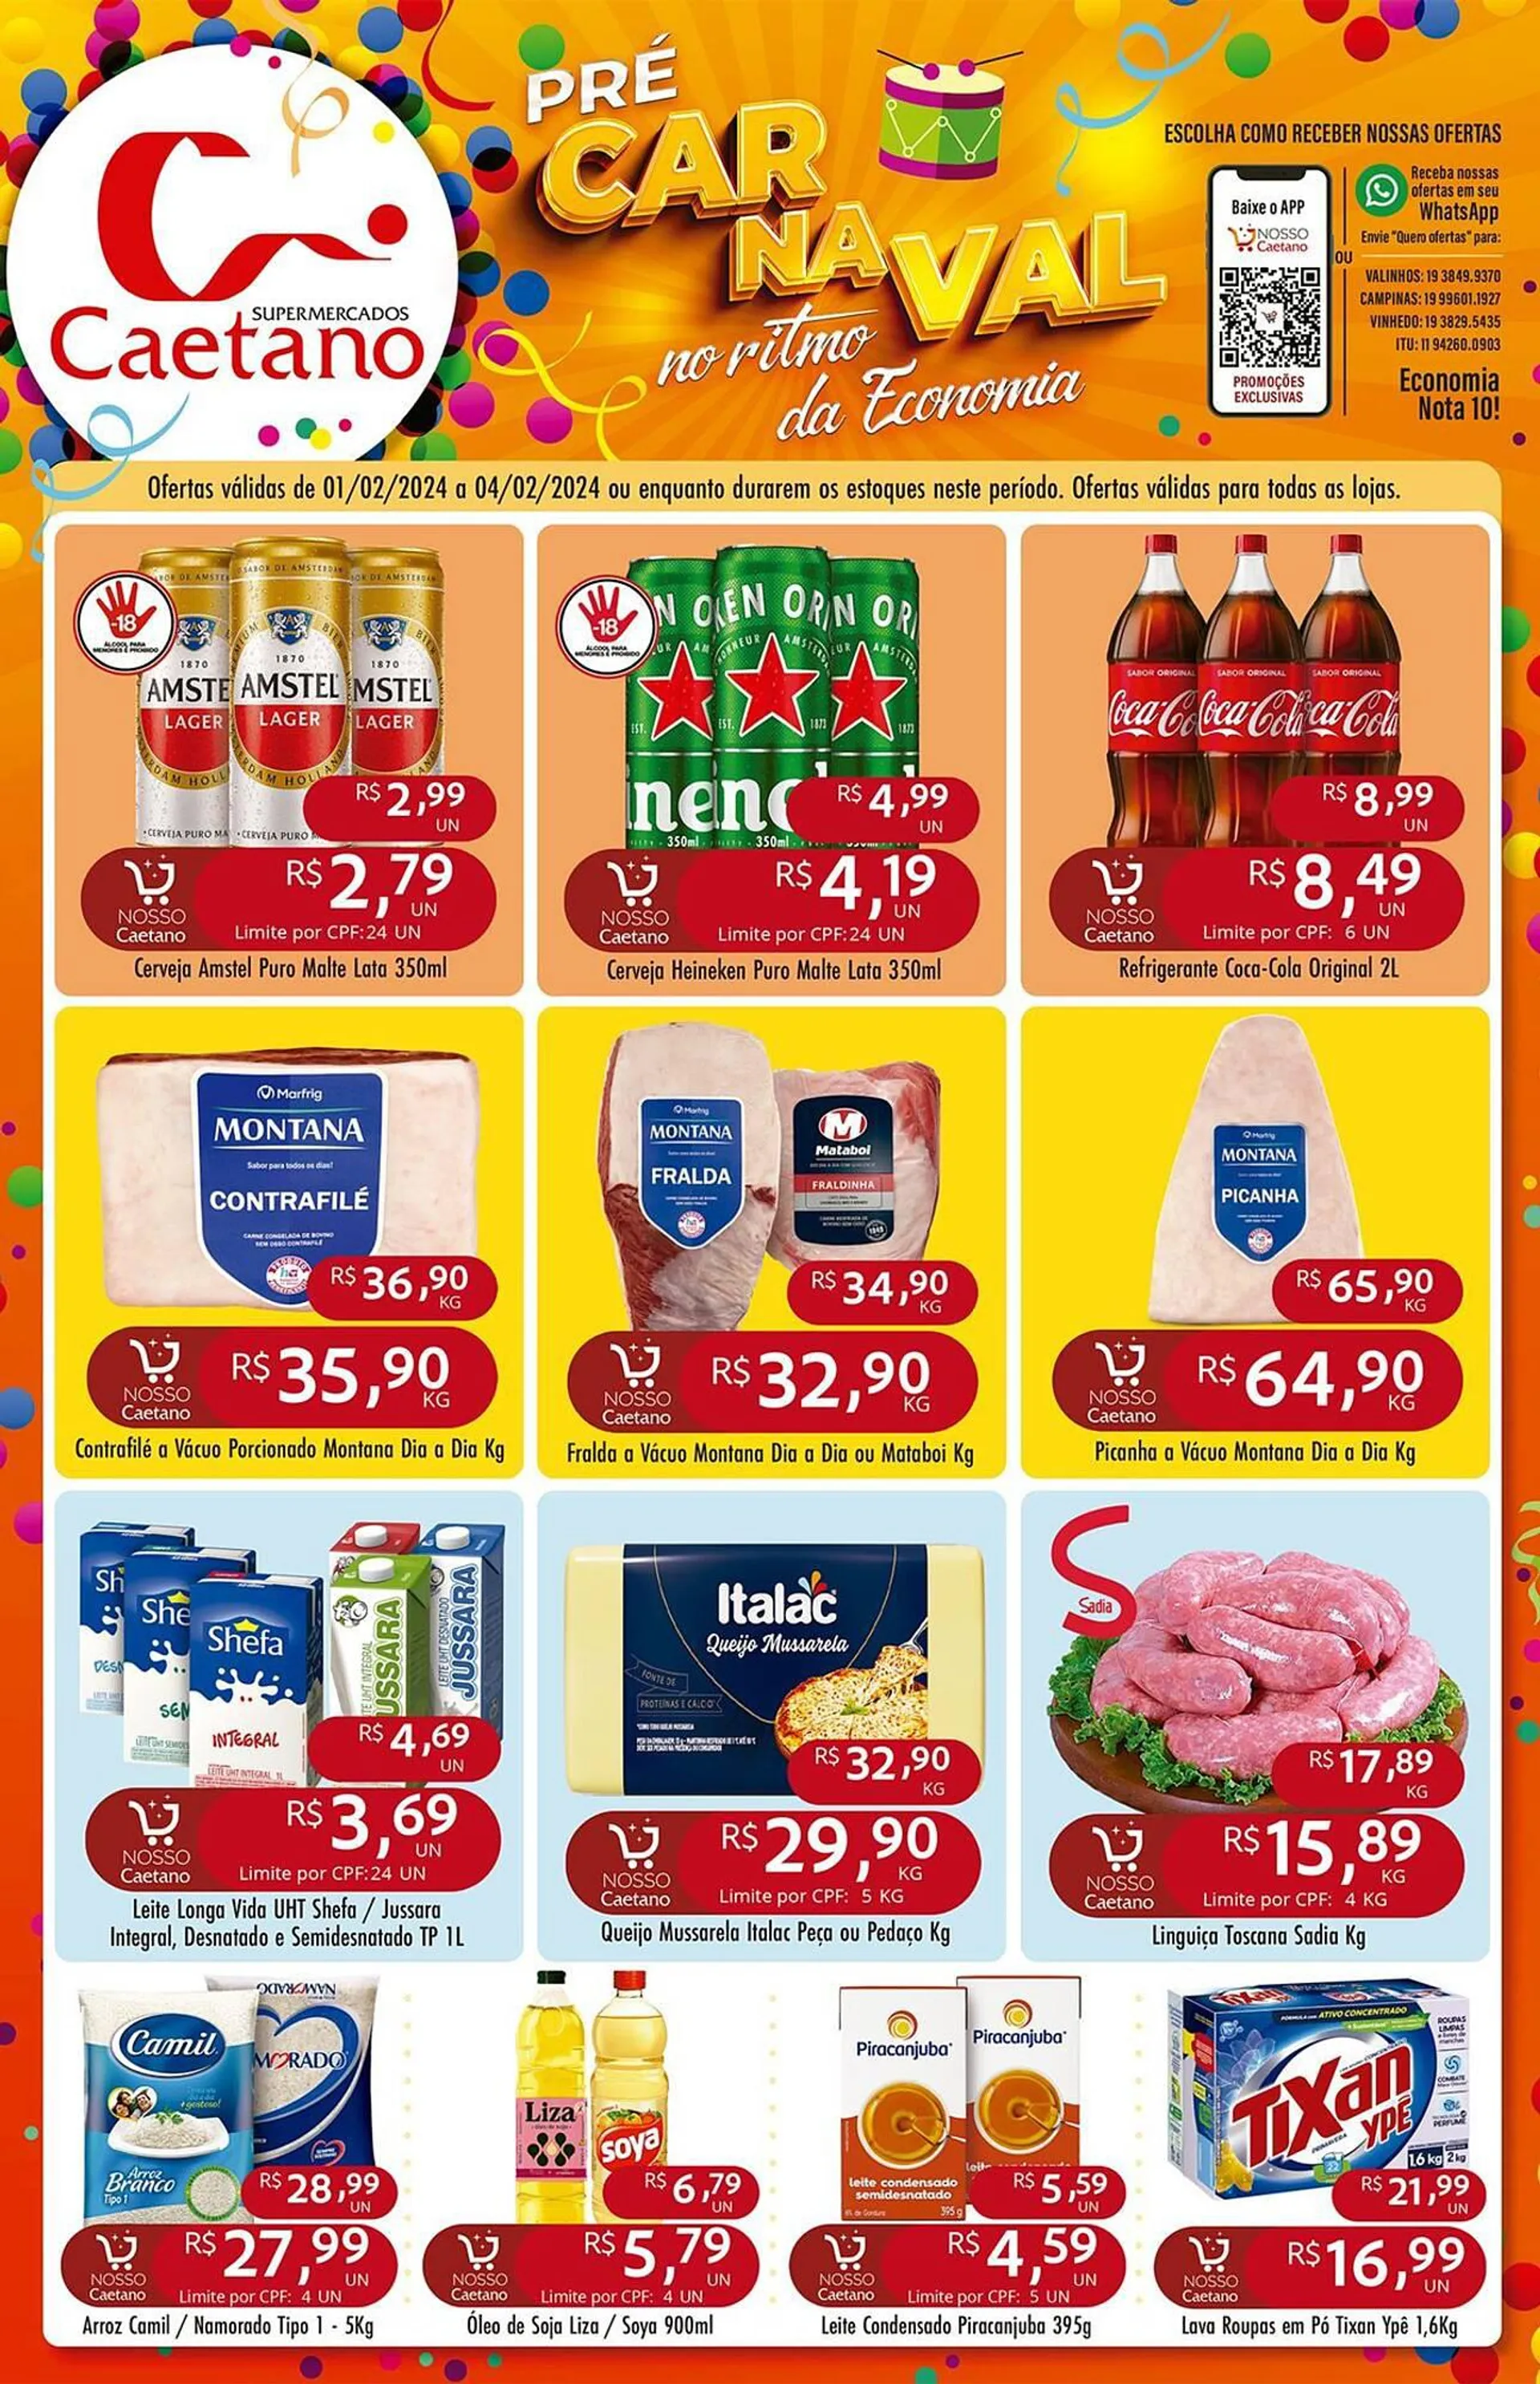 Encarte de Catálogo Supermercados Caetano 1 de fevereiro até 4 de fevereiro 2024 - Pagina 